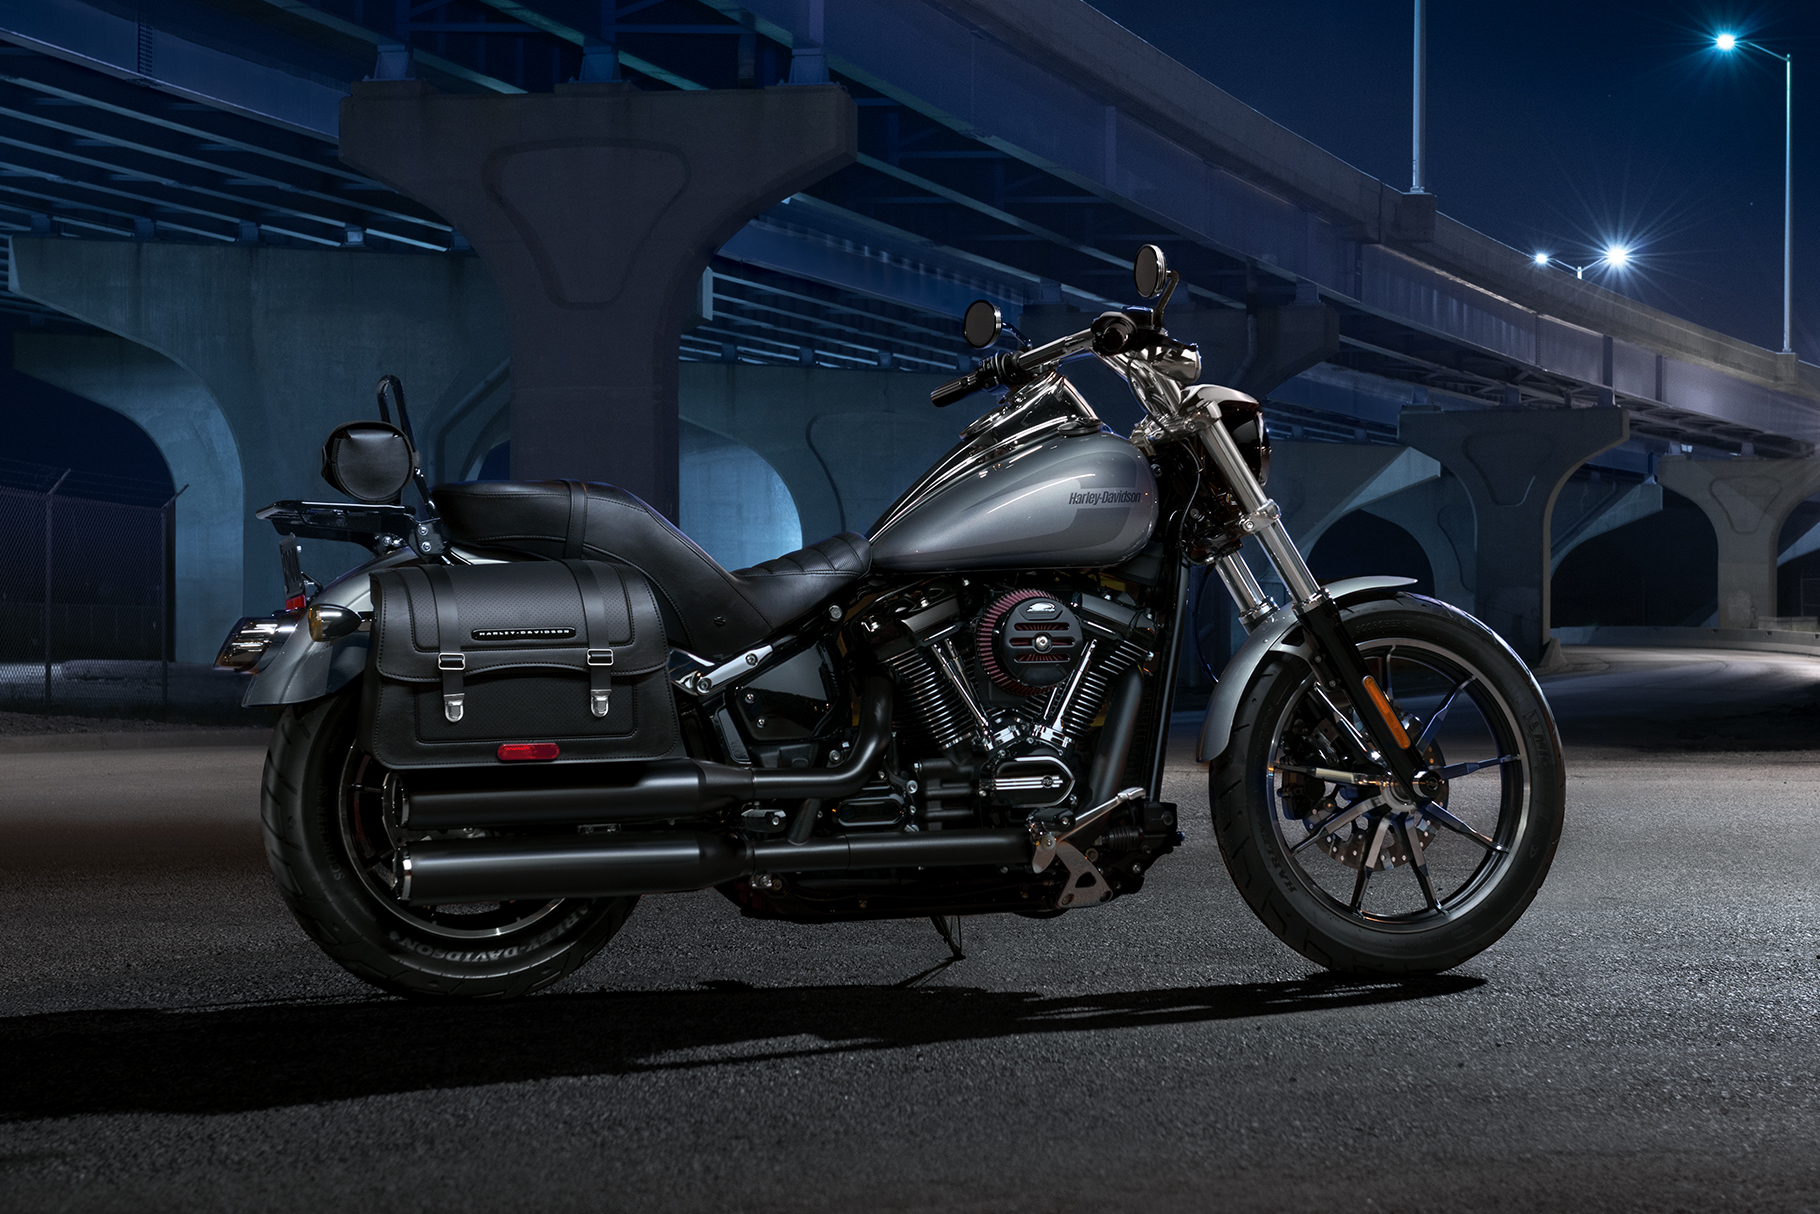  2019  Low  Rider  Motorcycle Harley  Davidson  USA